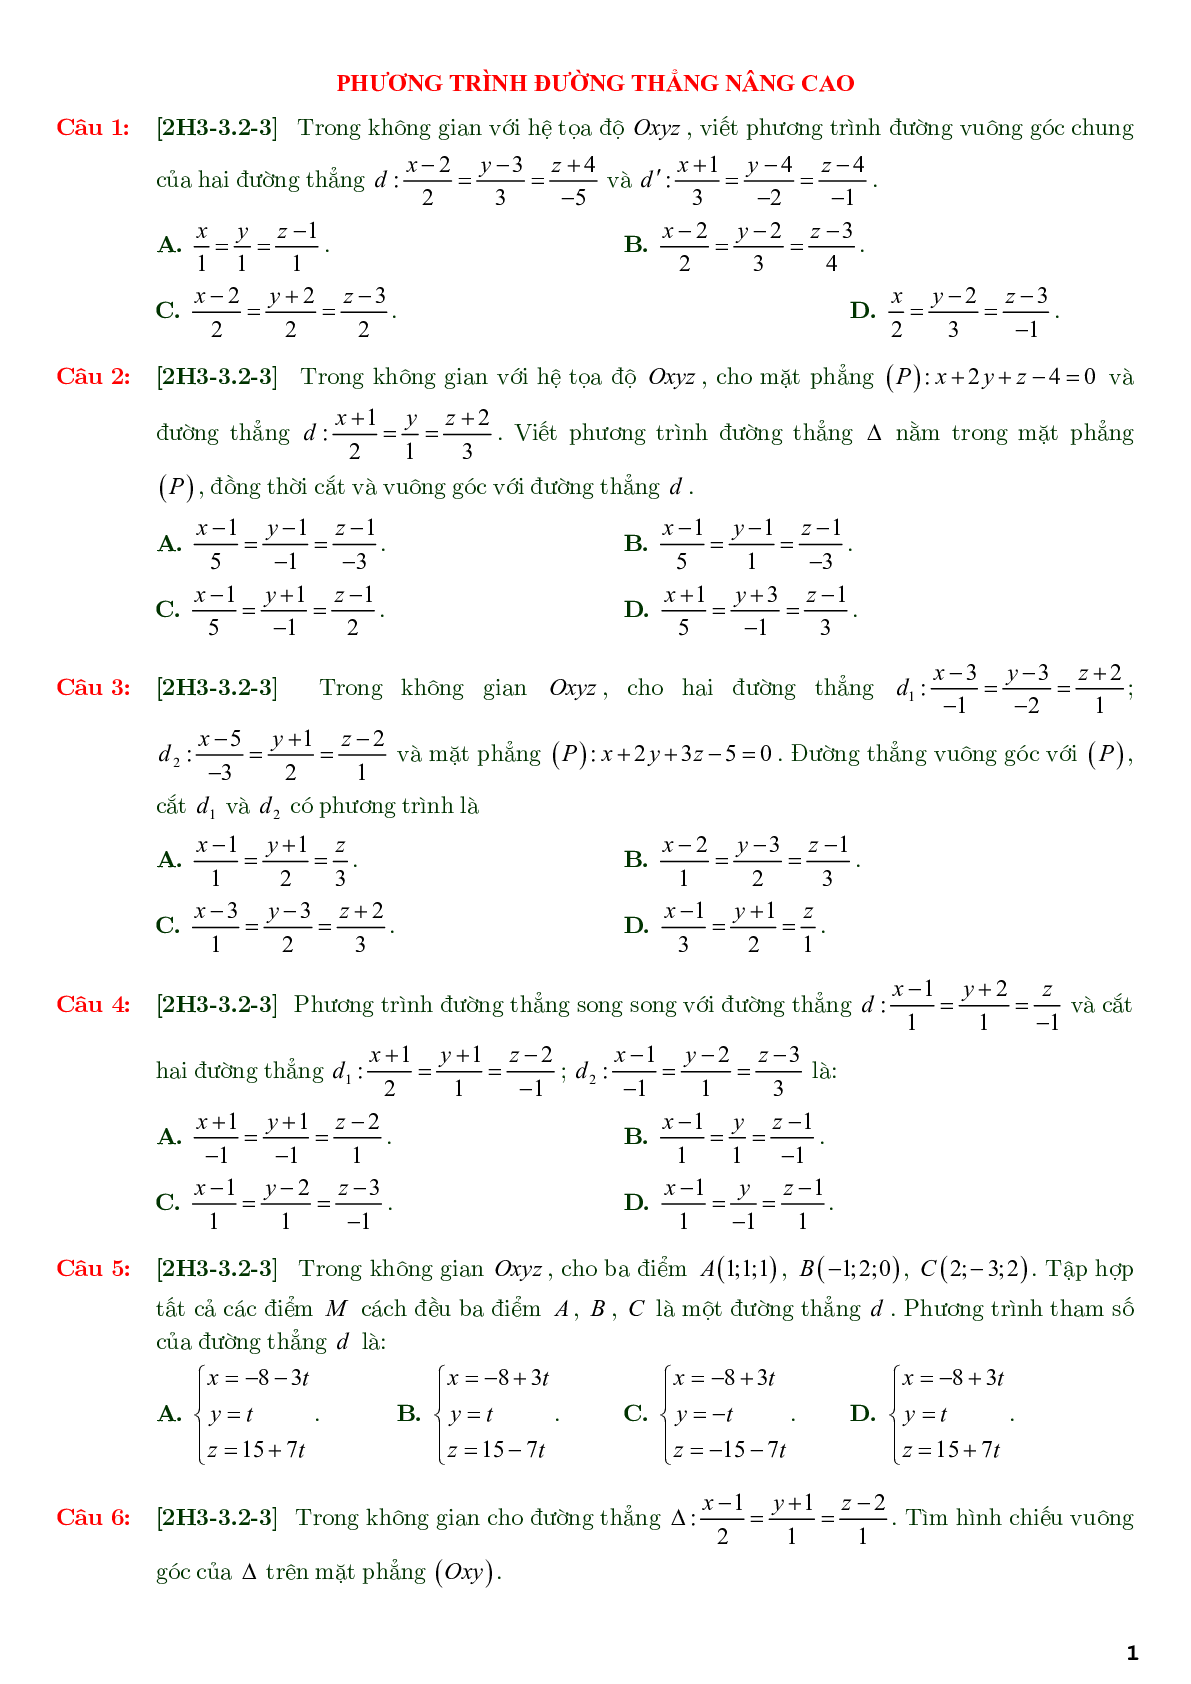 86 câu trắc nghiệm về phương trình đường thẳng nâng cao - có đáp án chi tiết (trang 1)